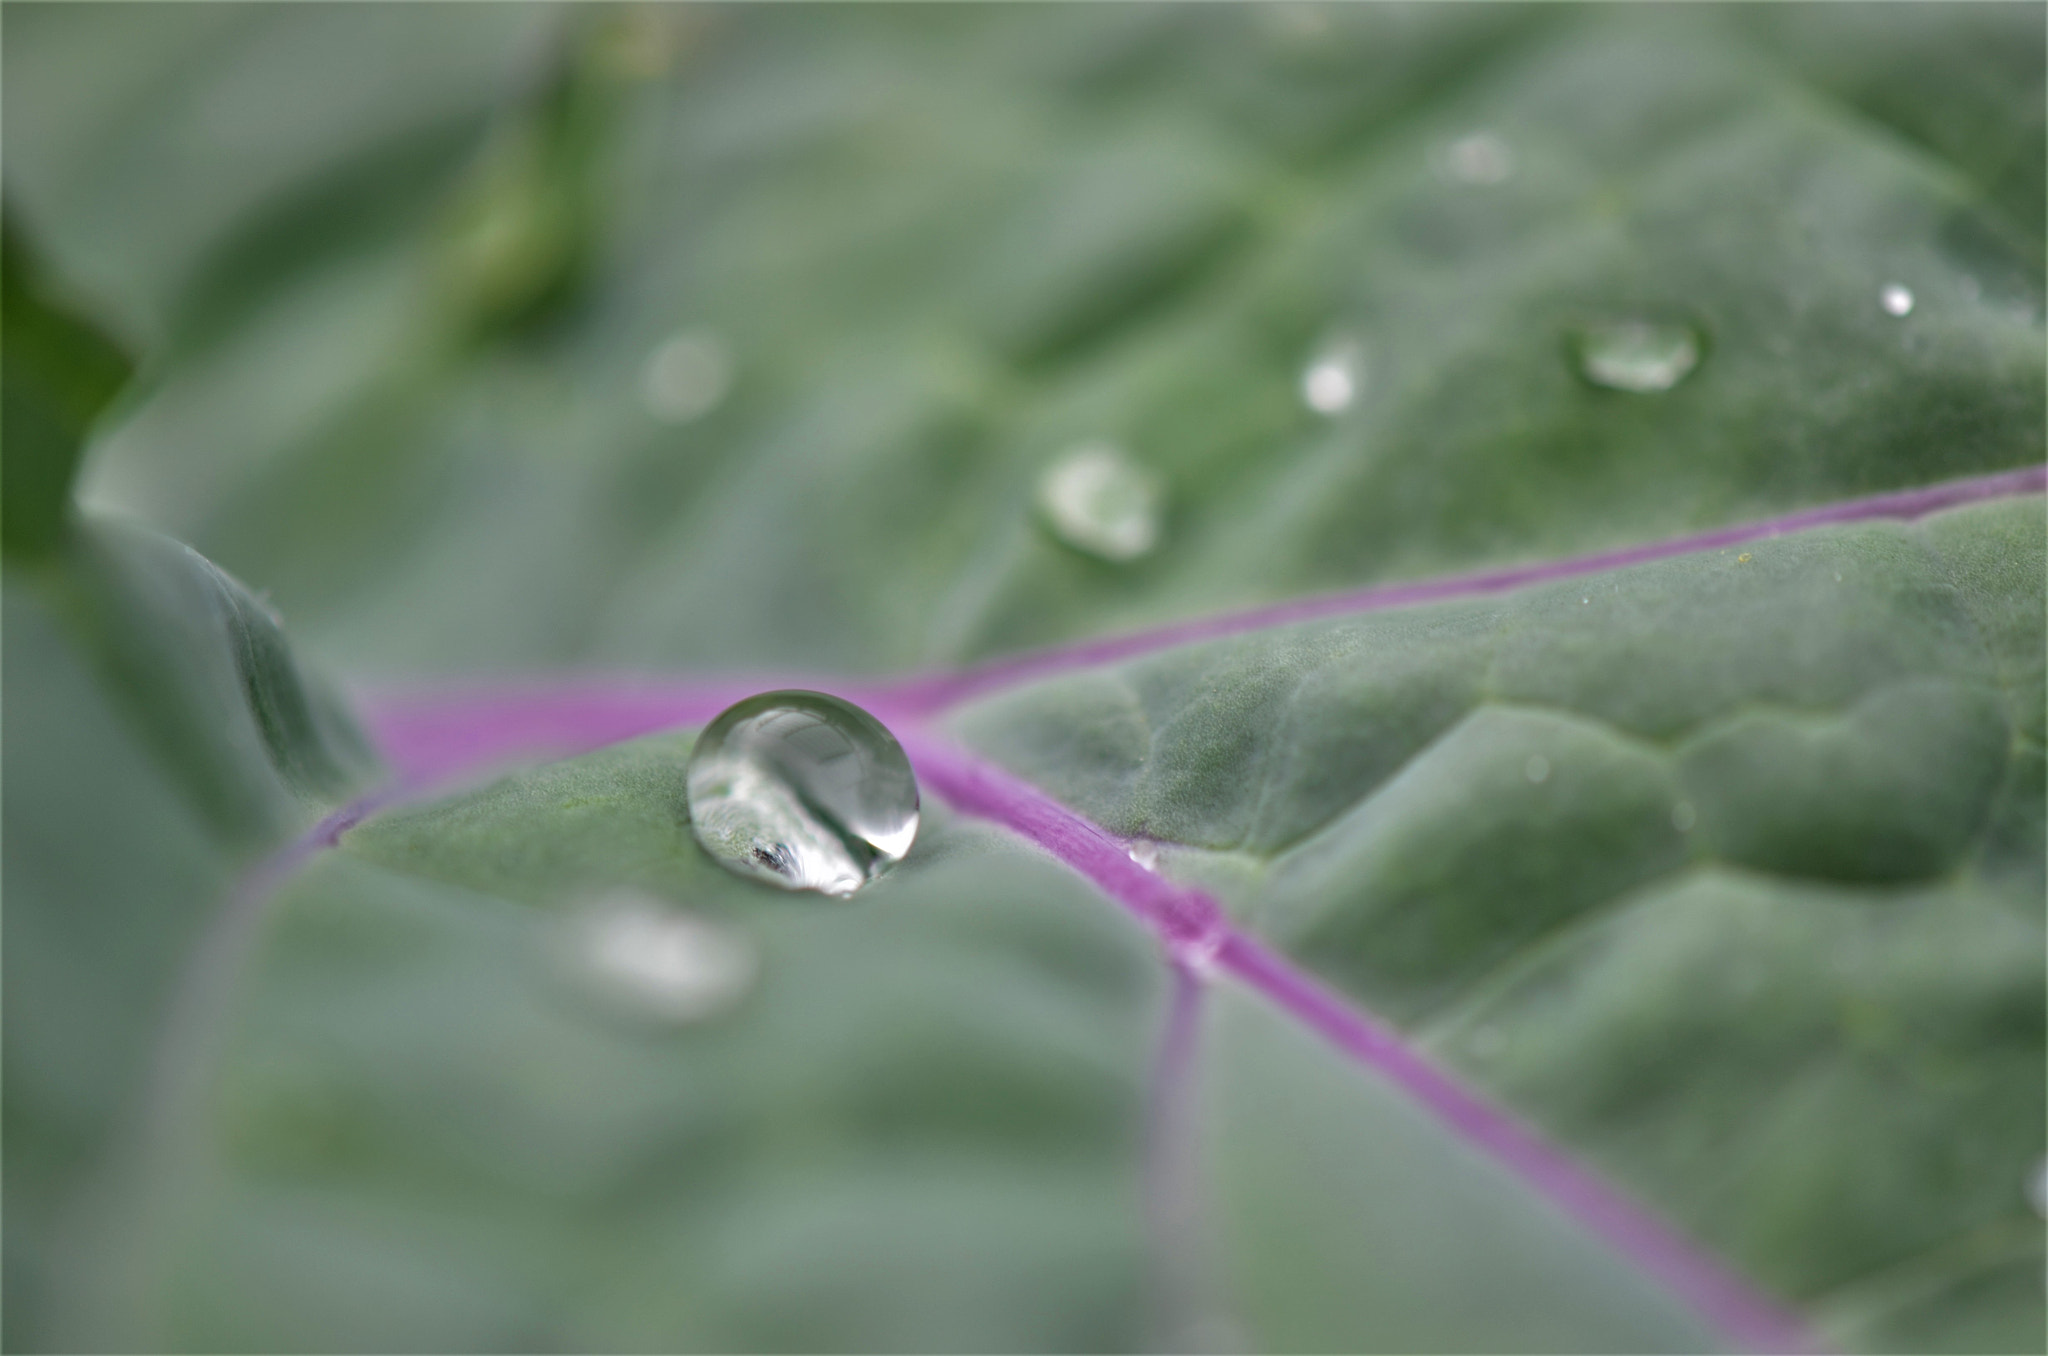 Nikon AF-S DX Micro-Nikkor 85mm F3.5G ED VR sample photo. Water drop on leaf photography